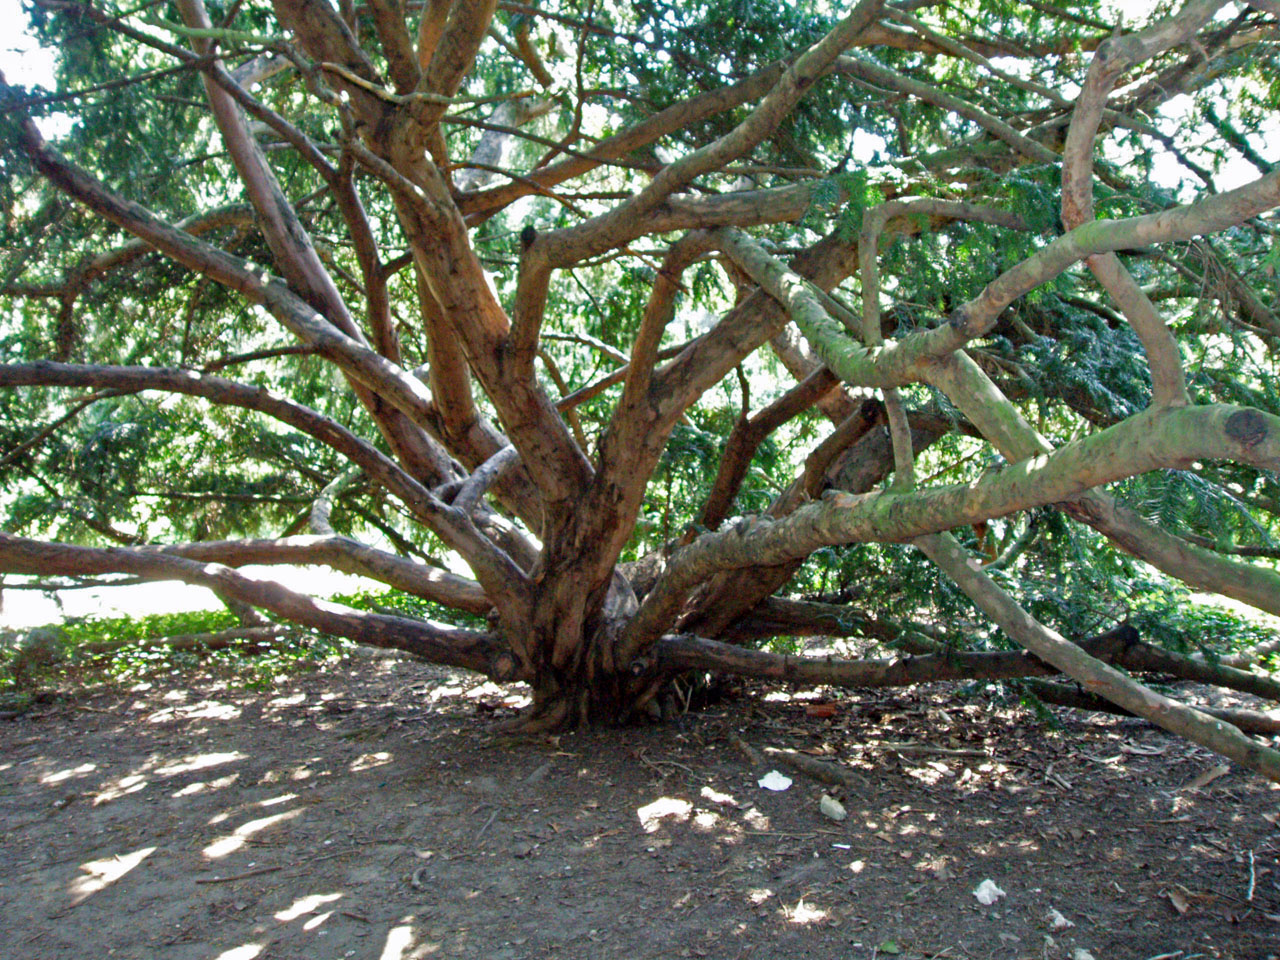 If Arboretum (tronc)